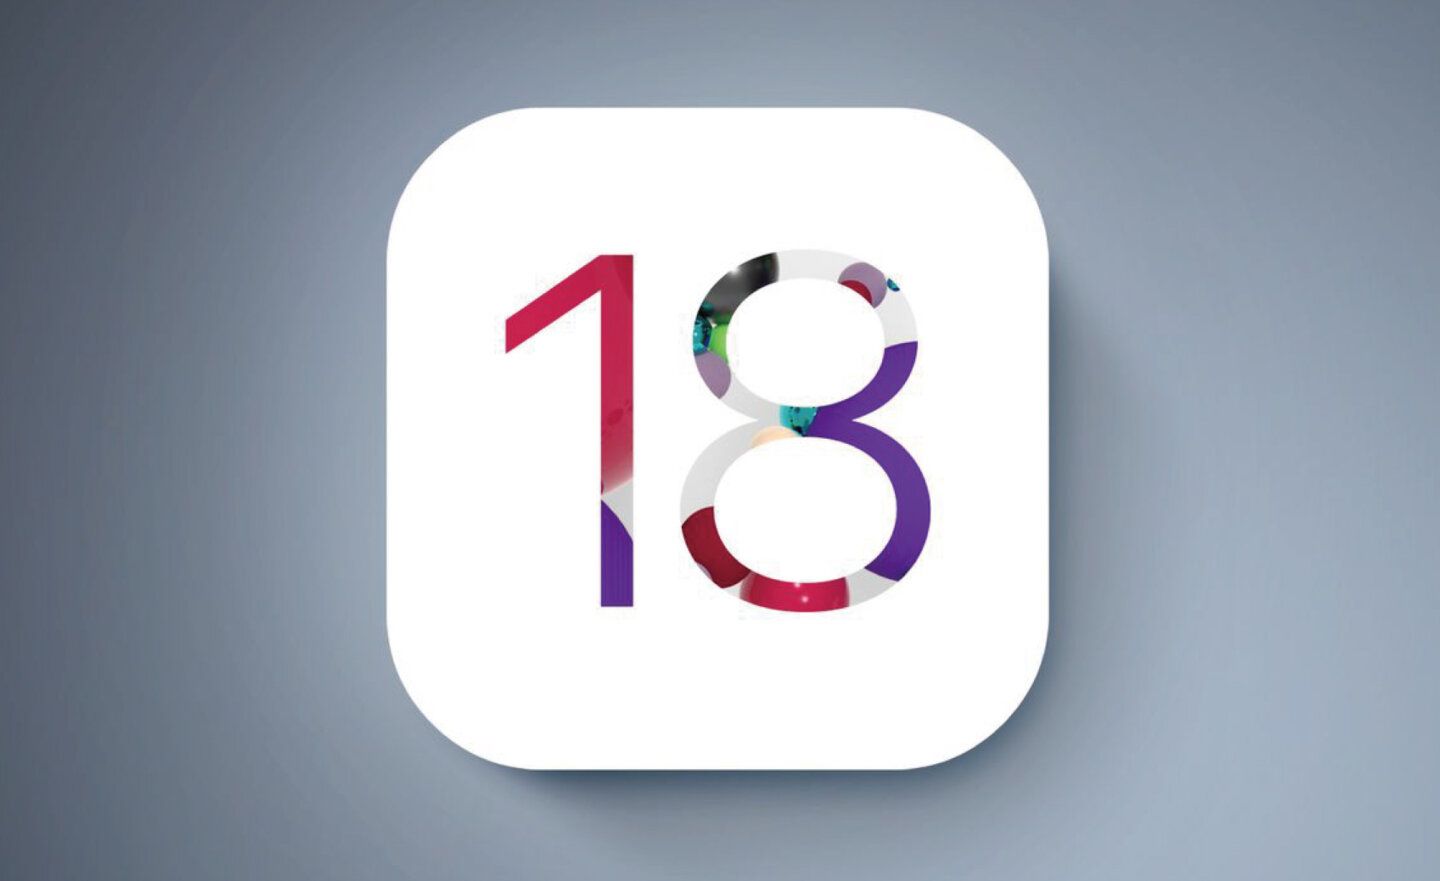 《彭博社》爆料 iOS 18 的主螢幕將有更多可自訂功能，將是史上最大更新